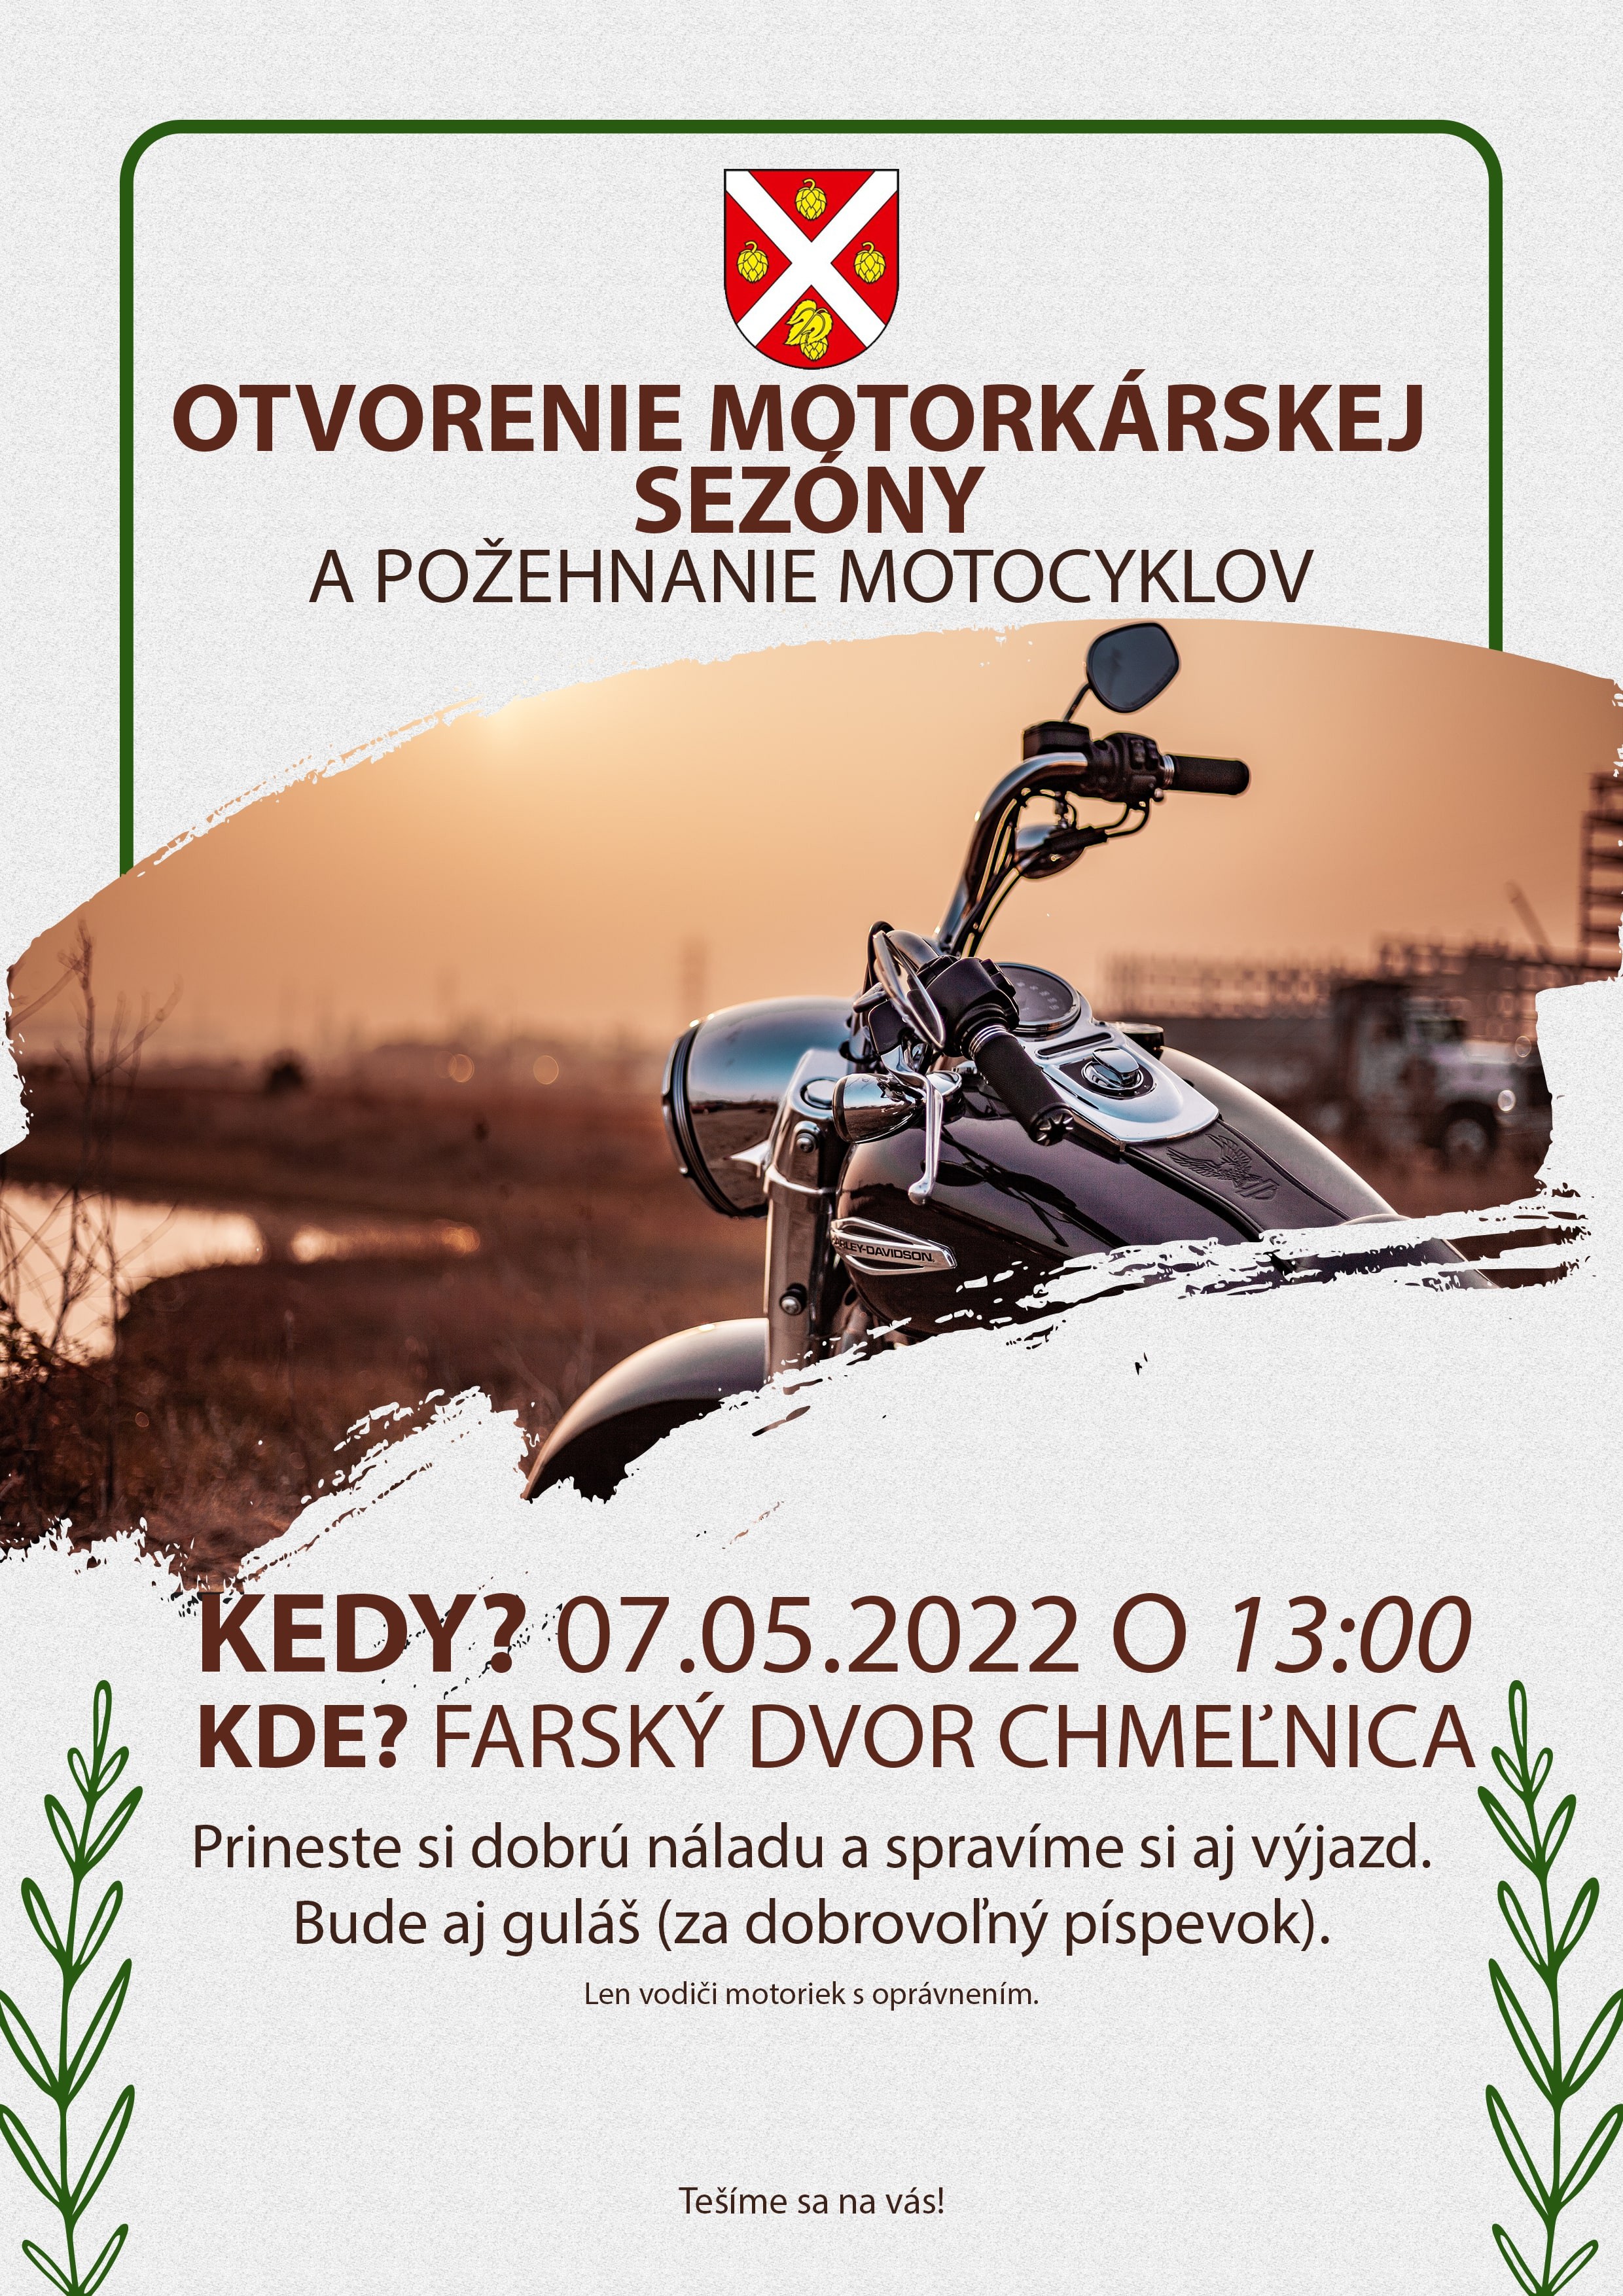 otvorenie-motorkarskej-sezony-2022.jpg